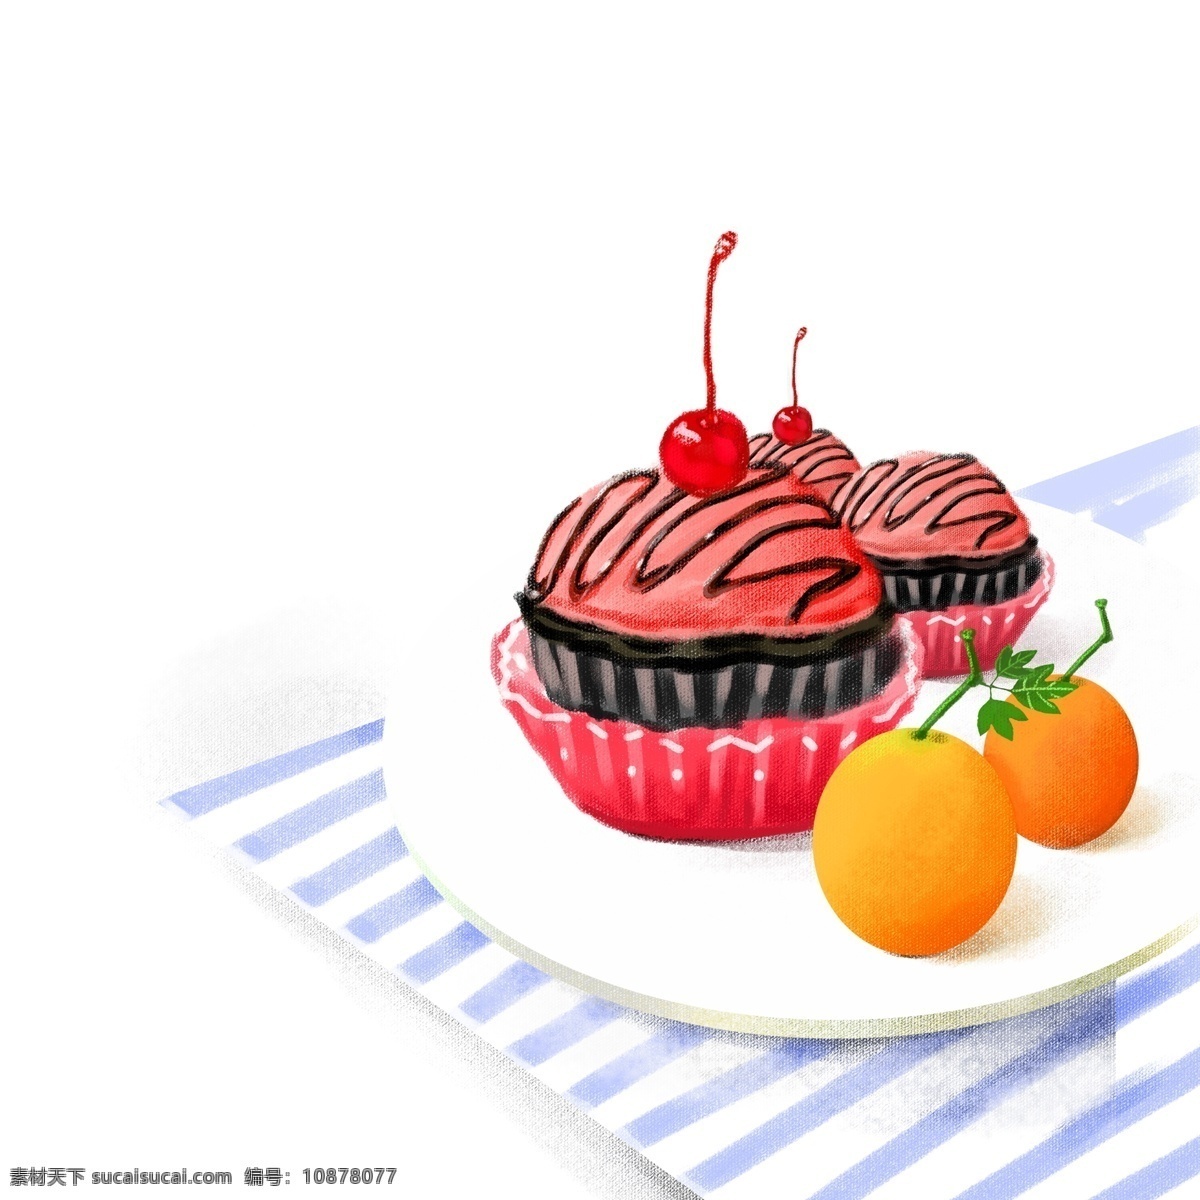 美味 水果 蛋糕 图案 草莓蛋糕 樱桃 美食 设计元素 创意元素 手绘元素 免扣元素